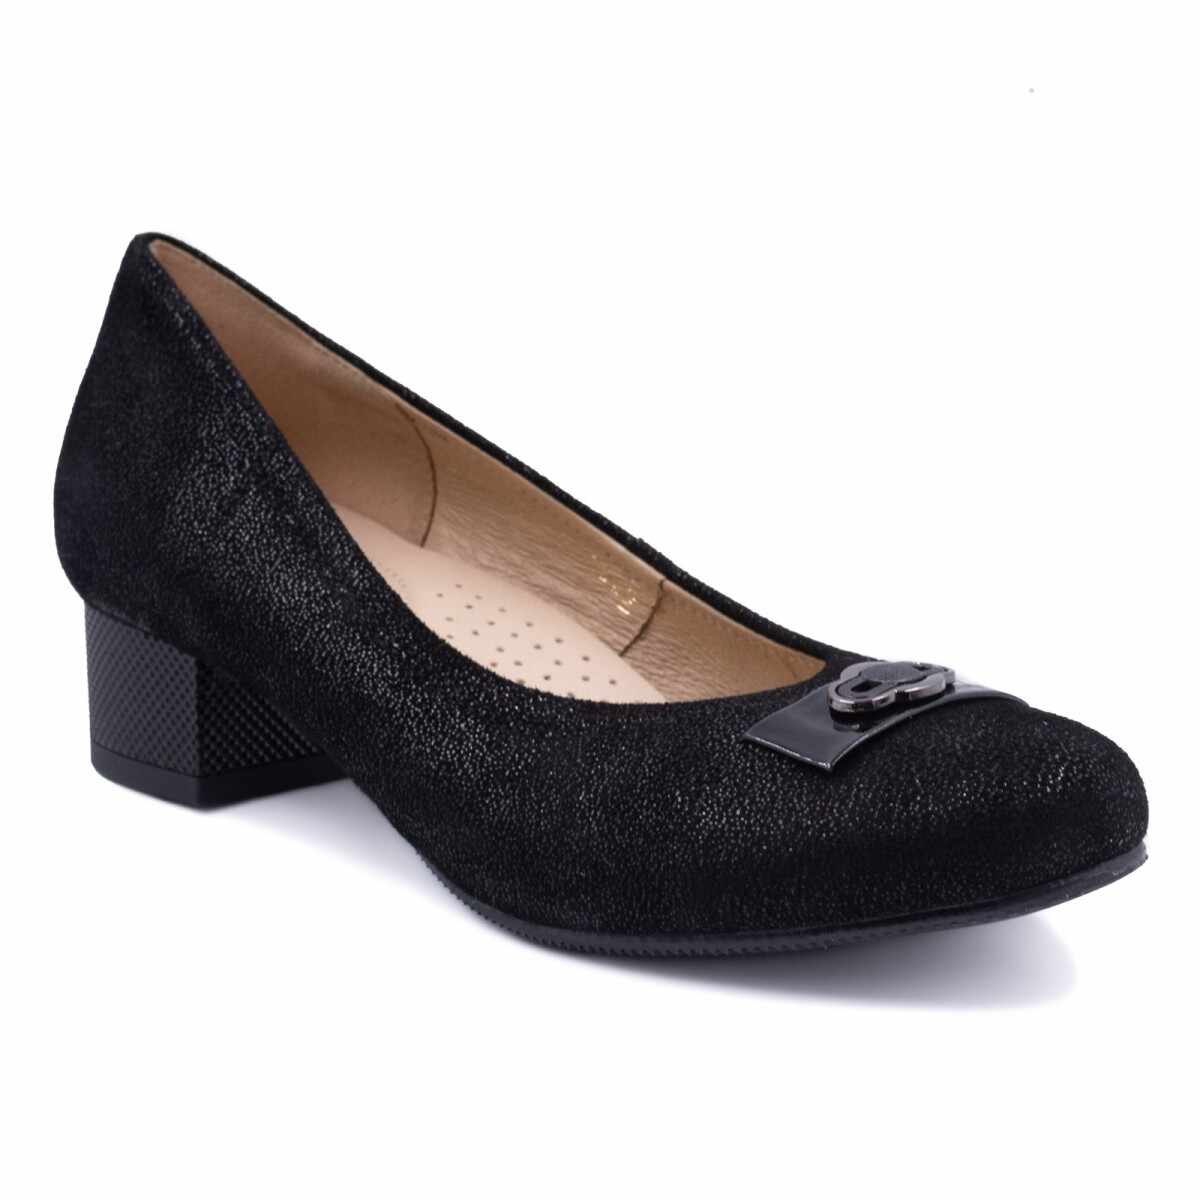 Maiden dynamic patron Pantofi eleganti dama, Beatrixx, din piele naturala velour, culoare negru,  cod AF-496G Dama///Incaltaminte Dama///Pantofi- 115 produse